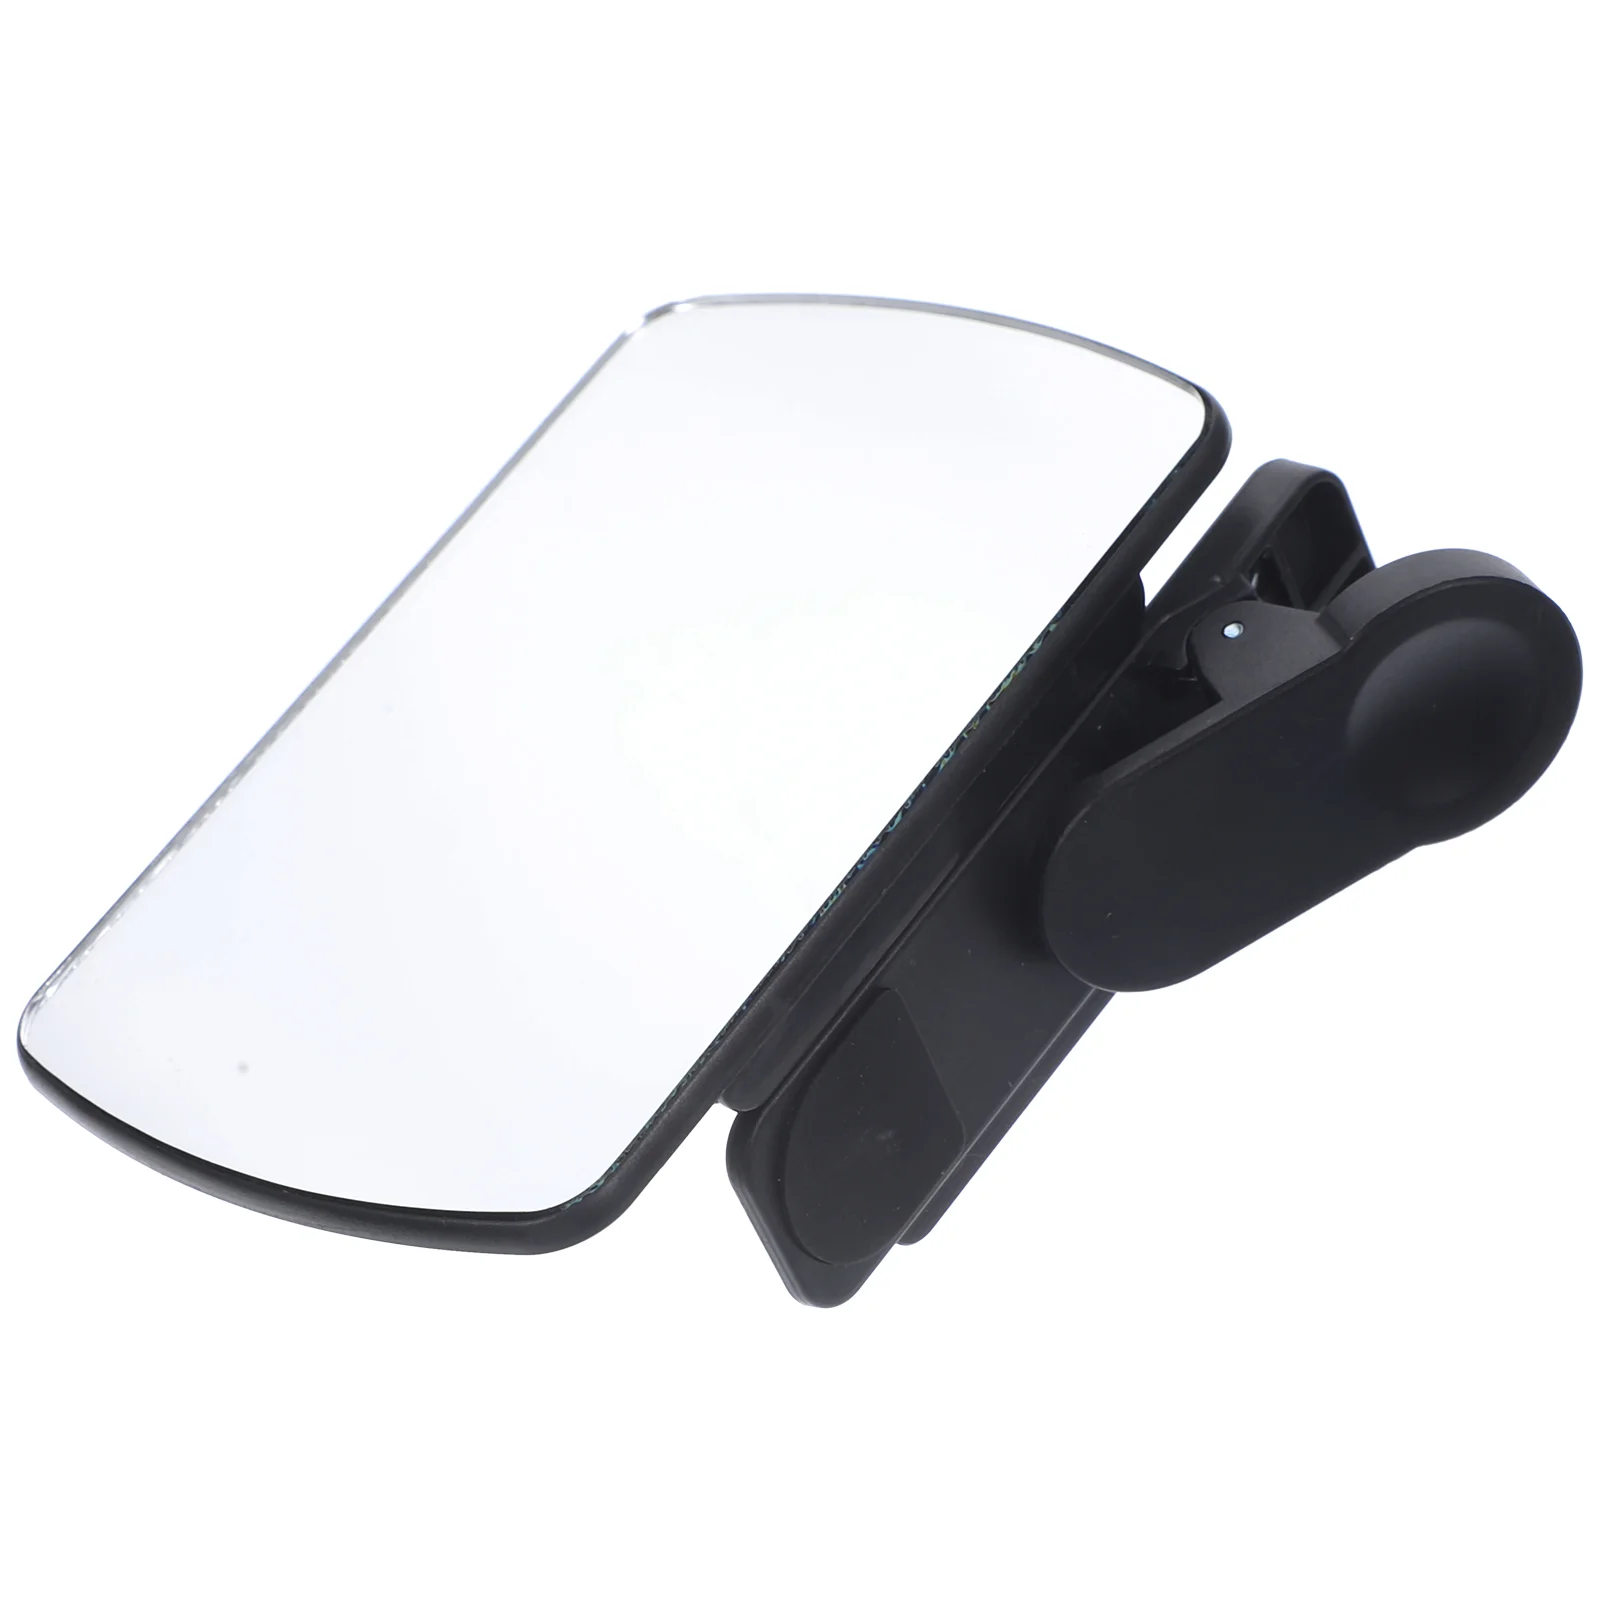 Регулируемый Зажим для зеркального отражения камеры телефона, Комплект аксессуаров для Селфи, Внешний Ход